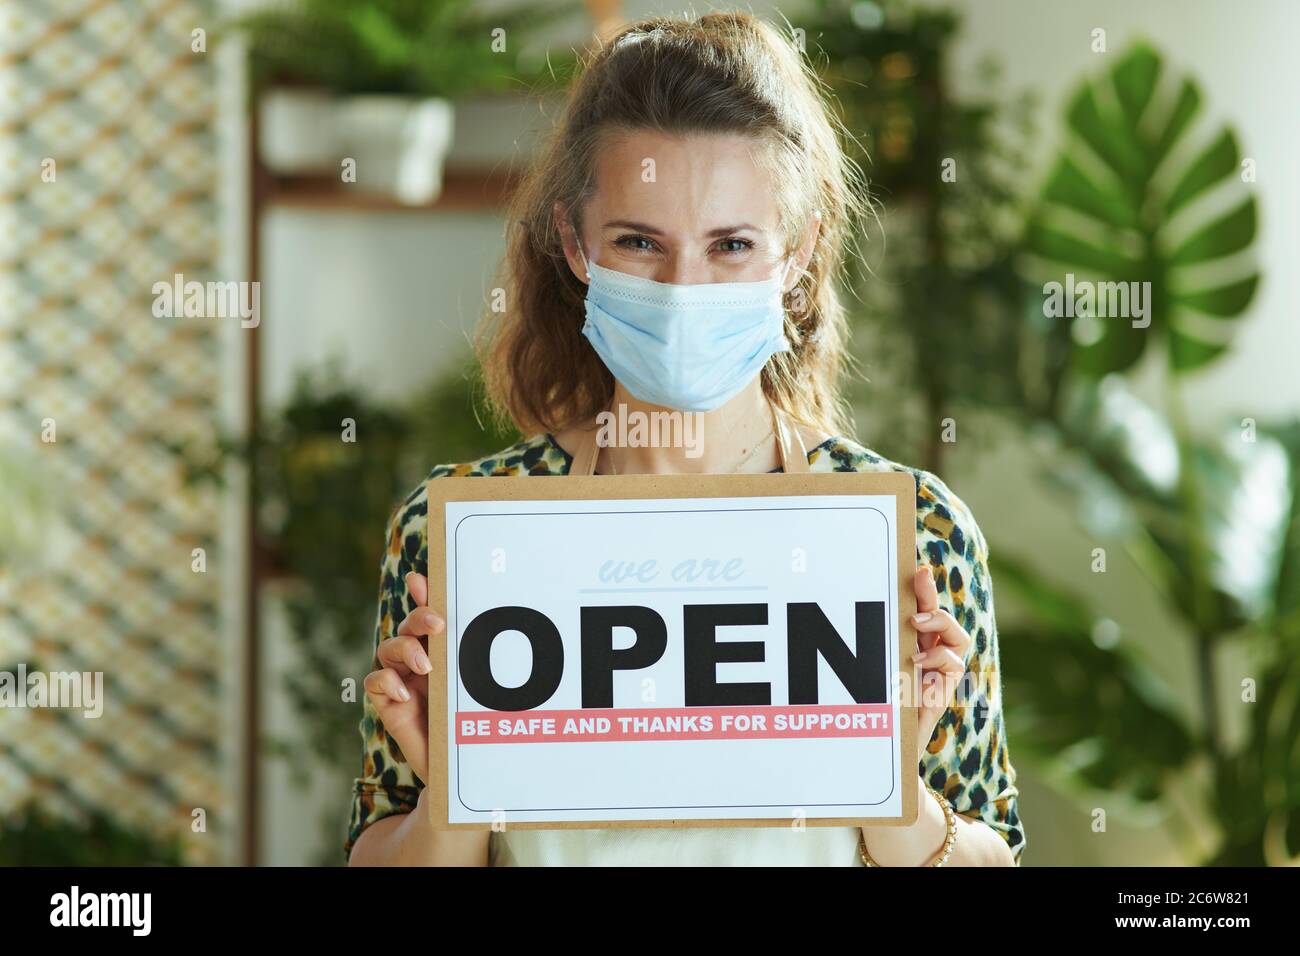 Überleben von Kleinunternehmen nach einer Pandemie des Covid-19. Portrait von lächelnd trendy 40 Jahre alte Kleinunternehmen Besitzerin Frau in Schürze mit medizinischen Maske zeigt Stockfoto